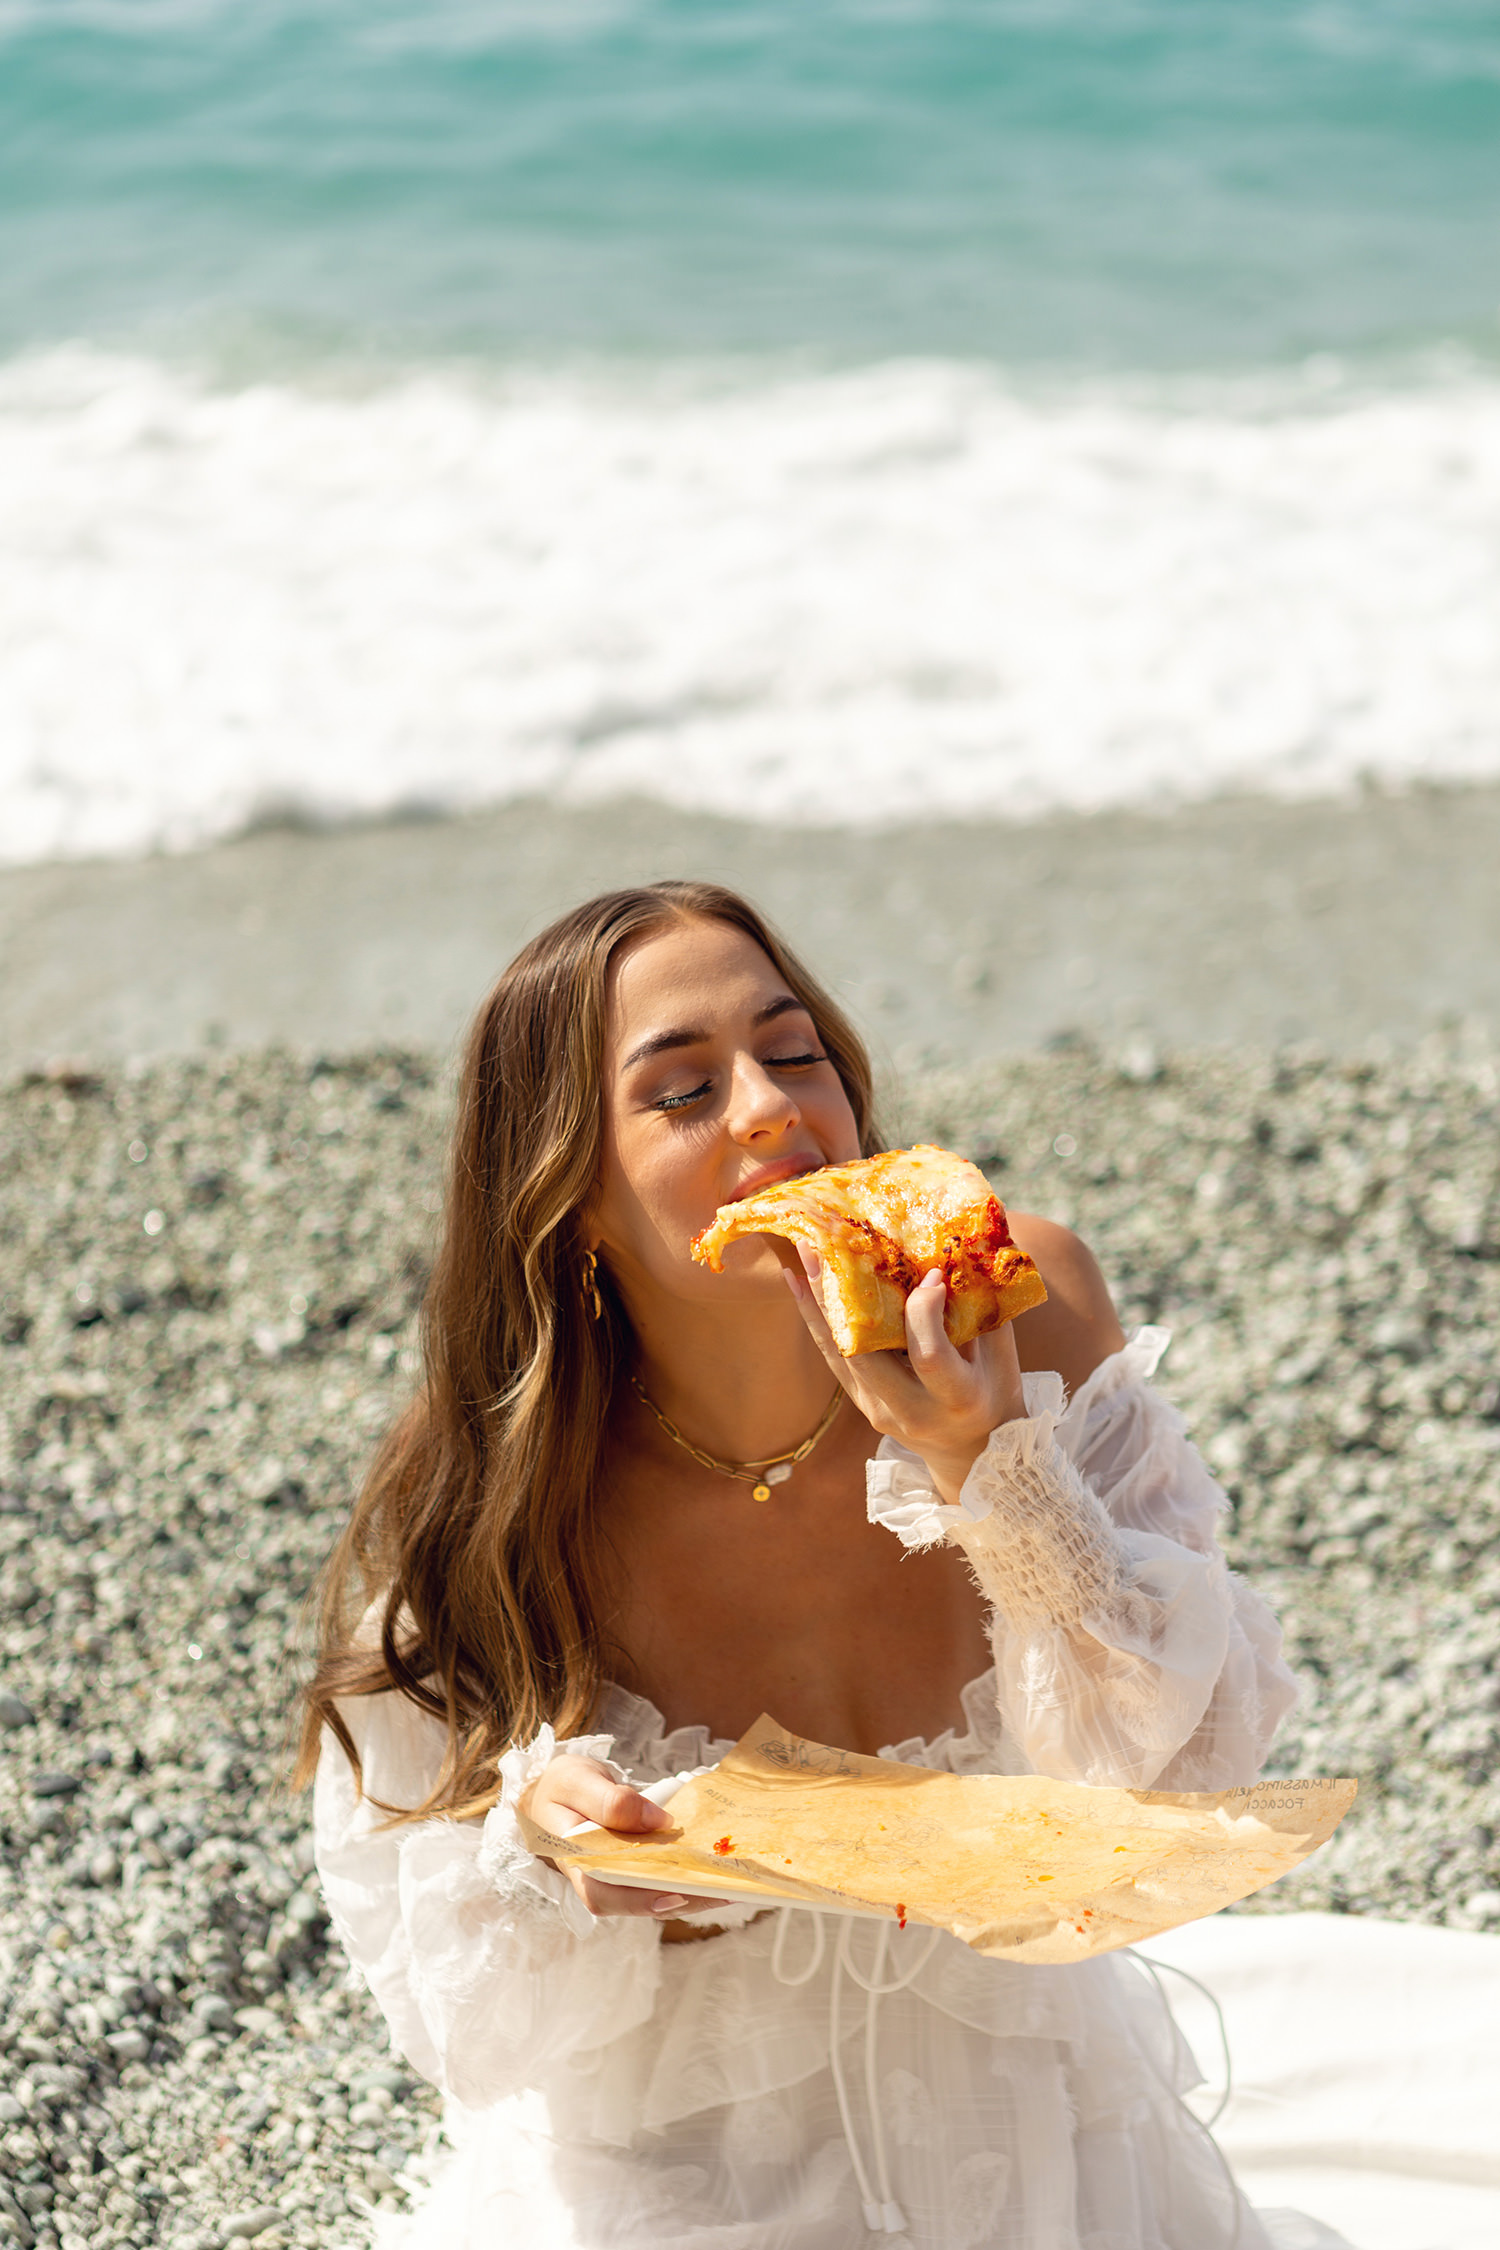 Girl eating a slice of pizza in Cinque Terre, La Spezia